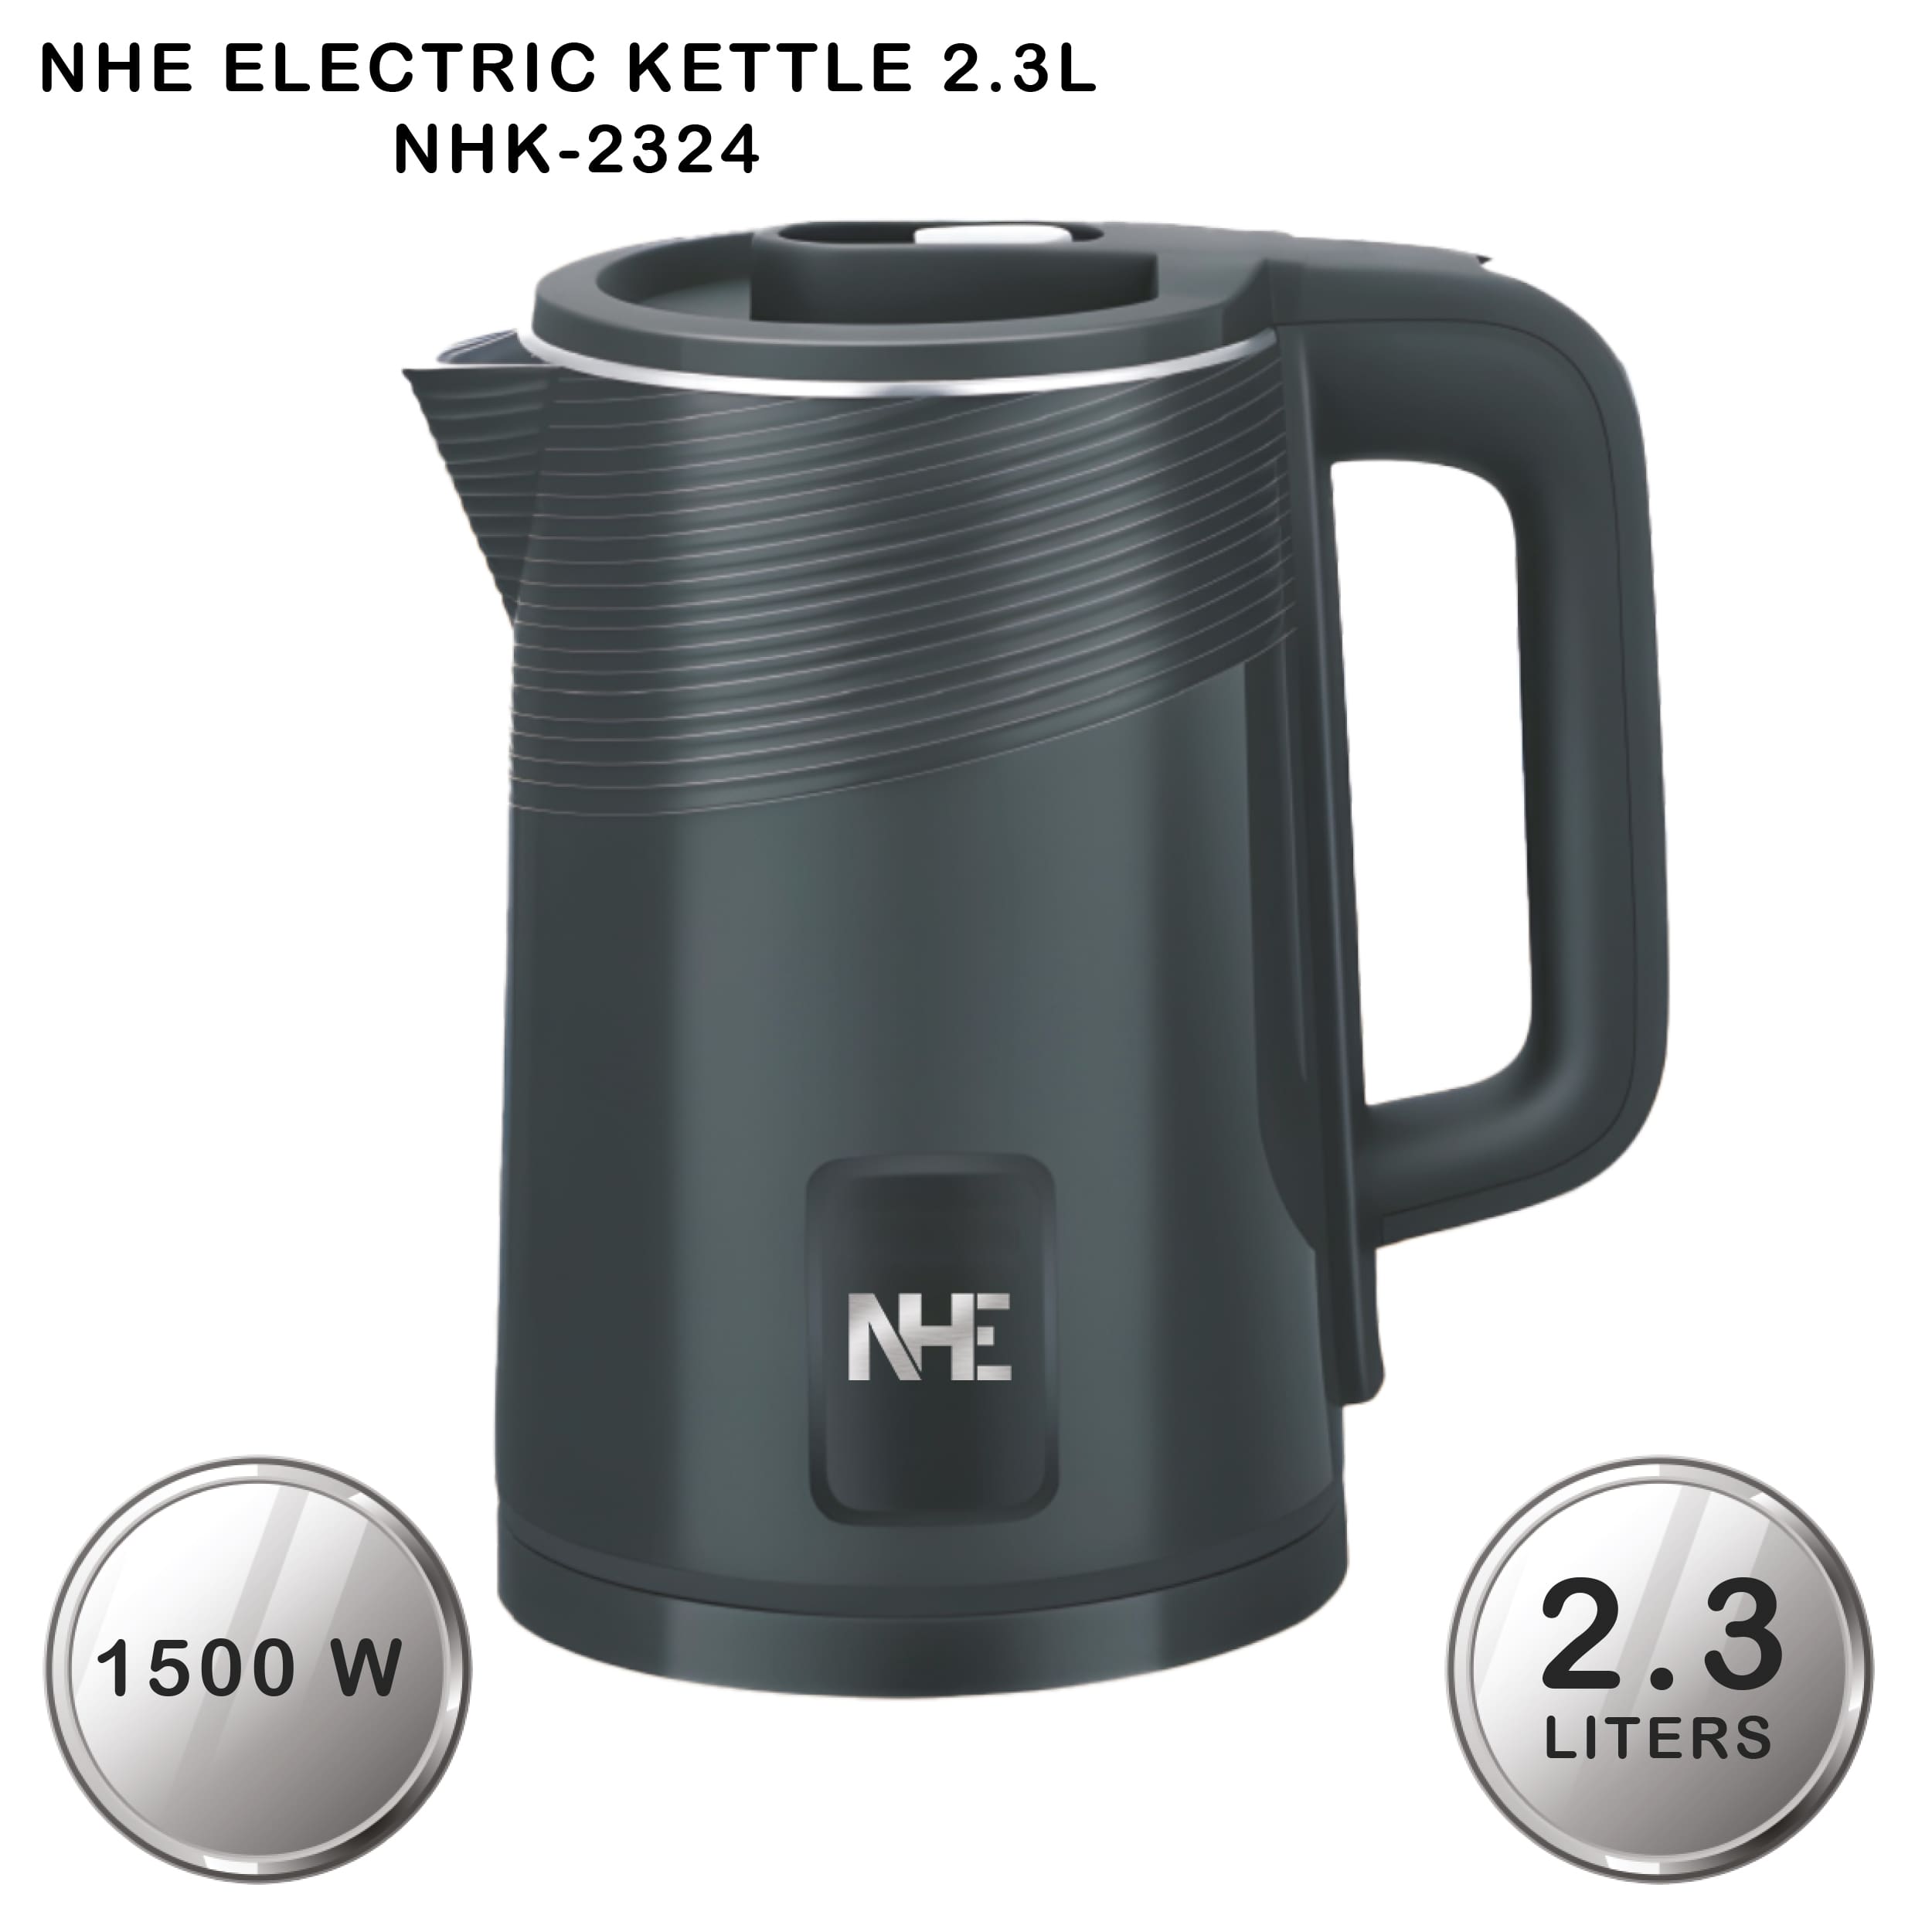 NHE Electric Kettle 2.3L NHK-2324 Black